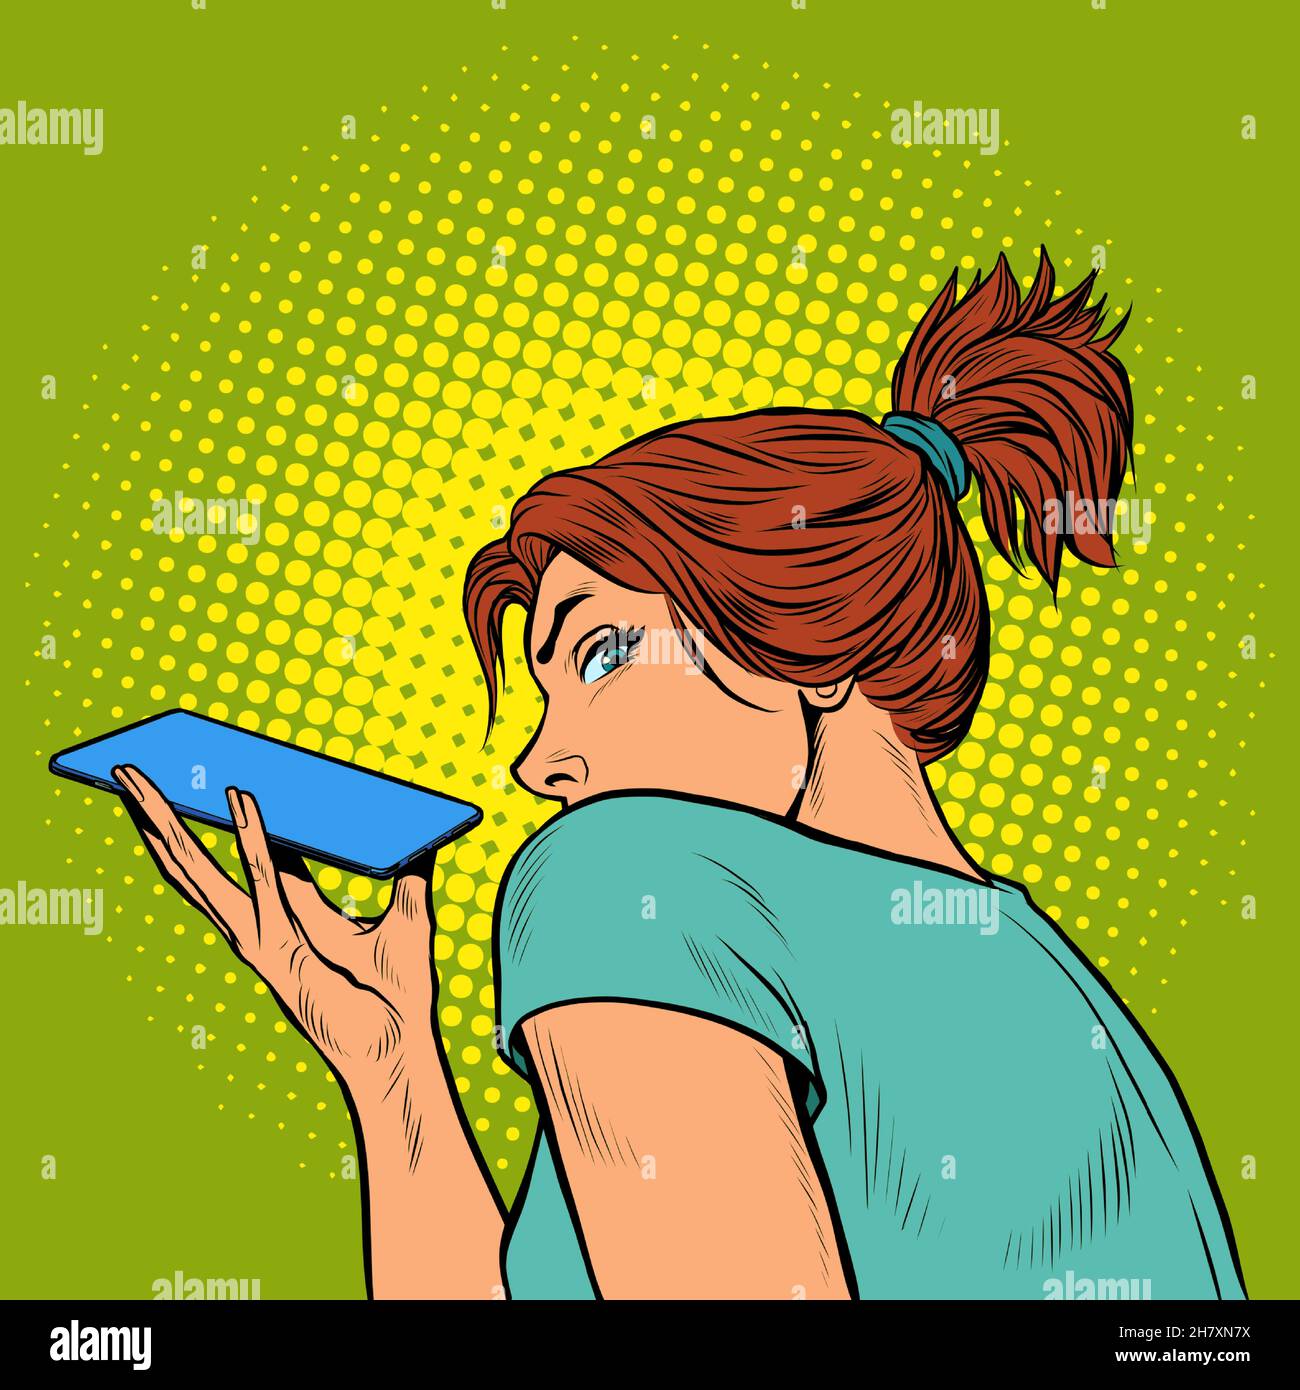 una mujer está hablando en un smartphone con un altavoz, sosteniendo el teléfono horizontalmente Ilustración del Vector